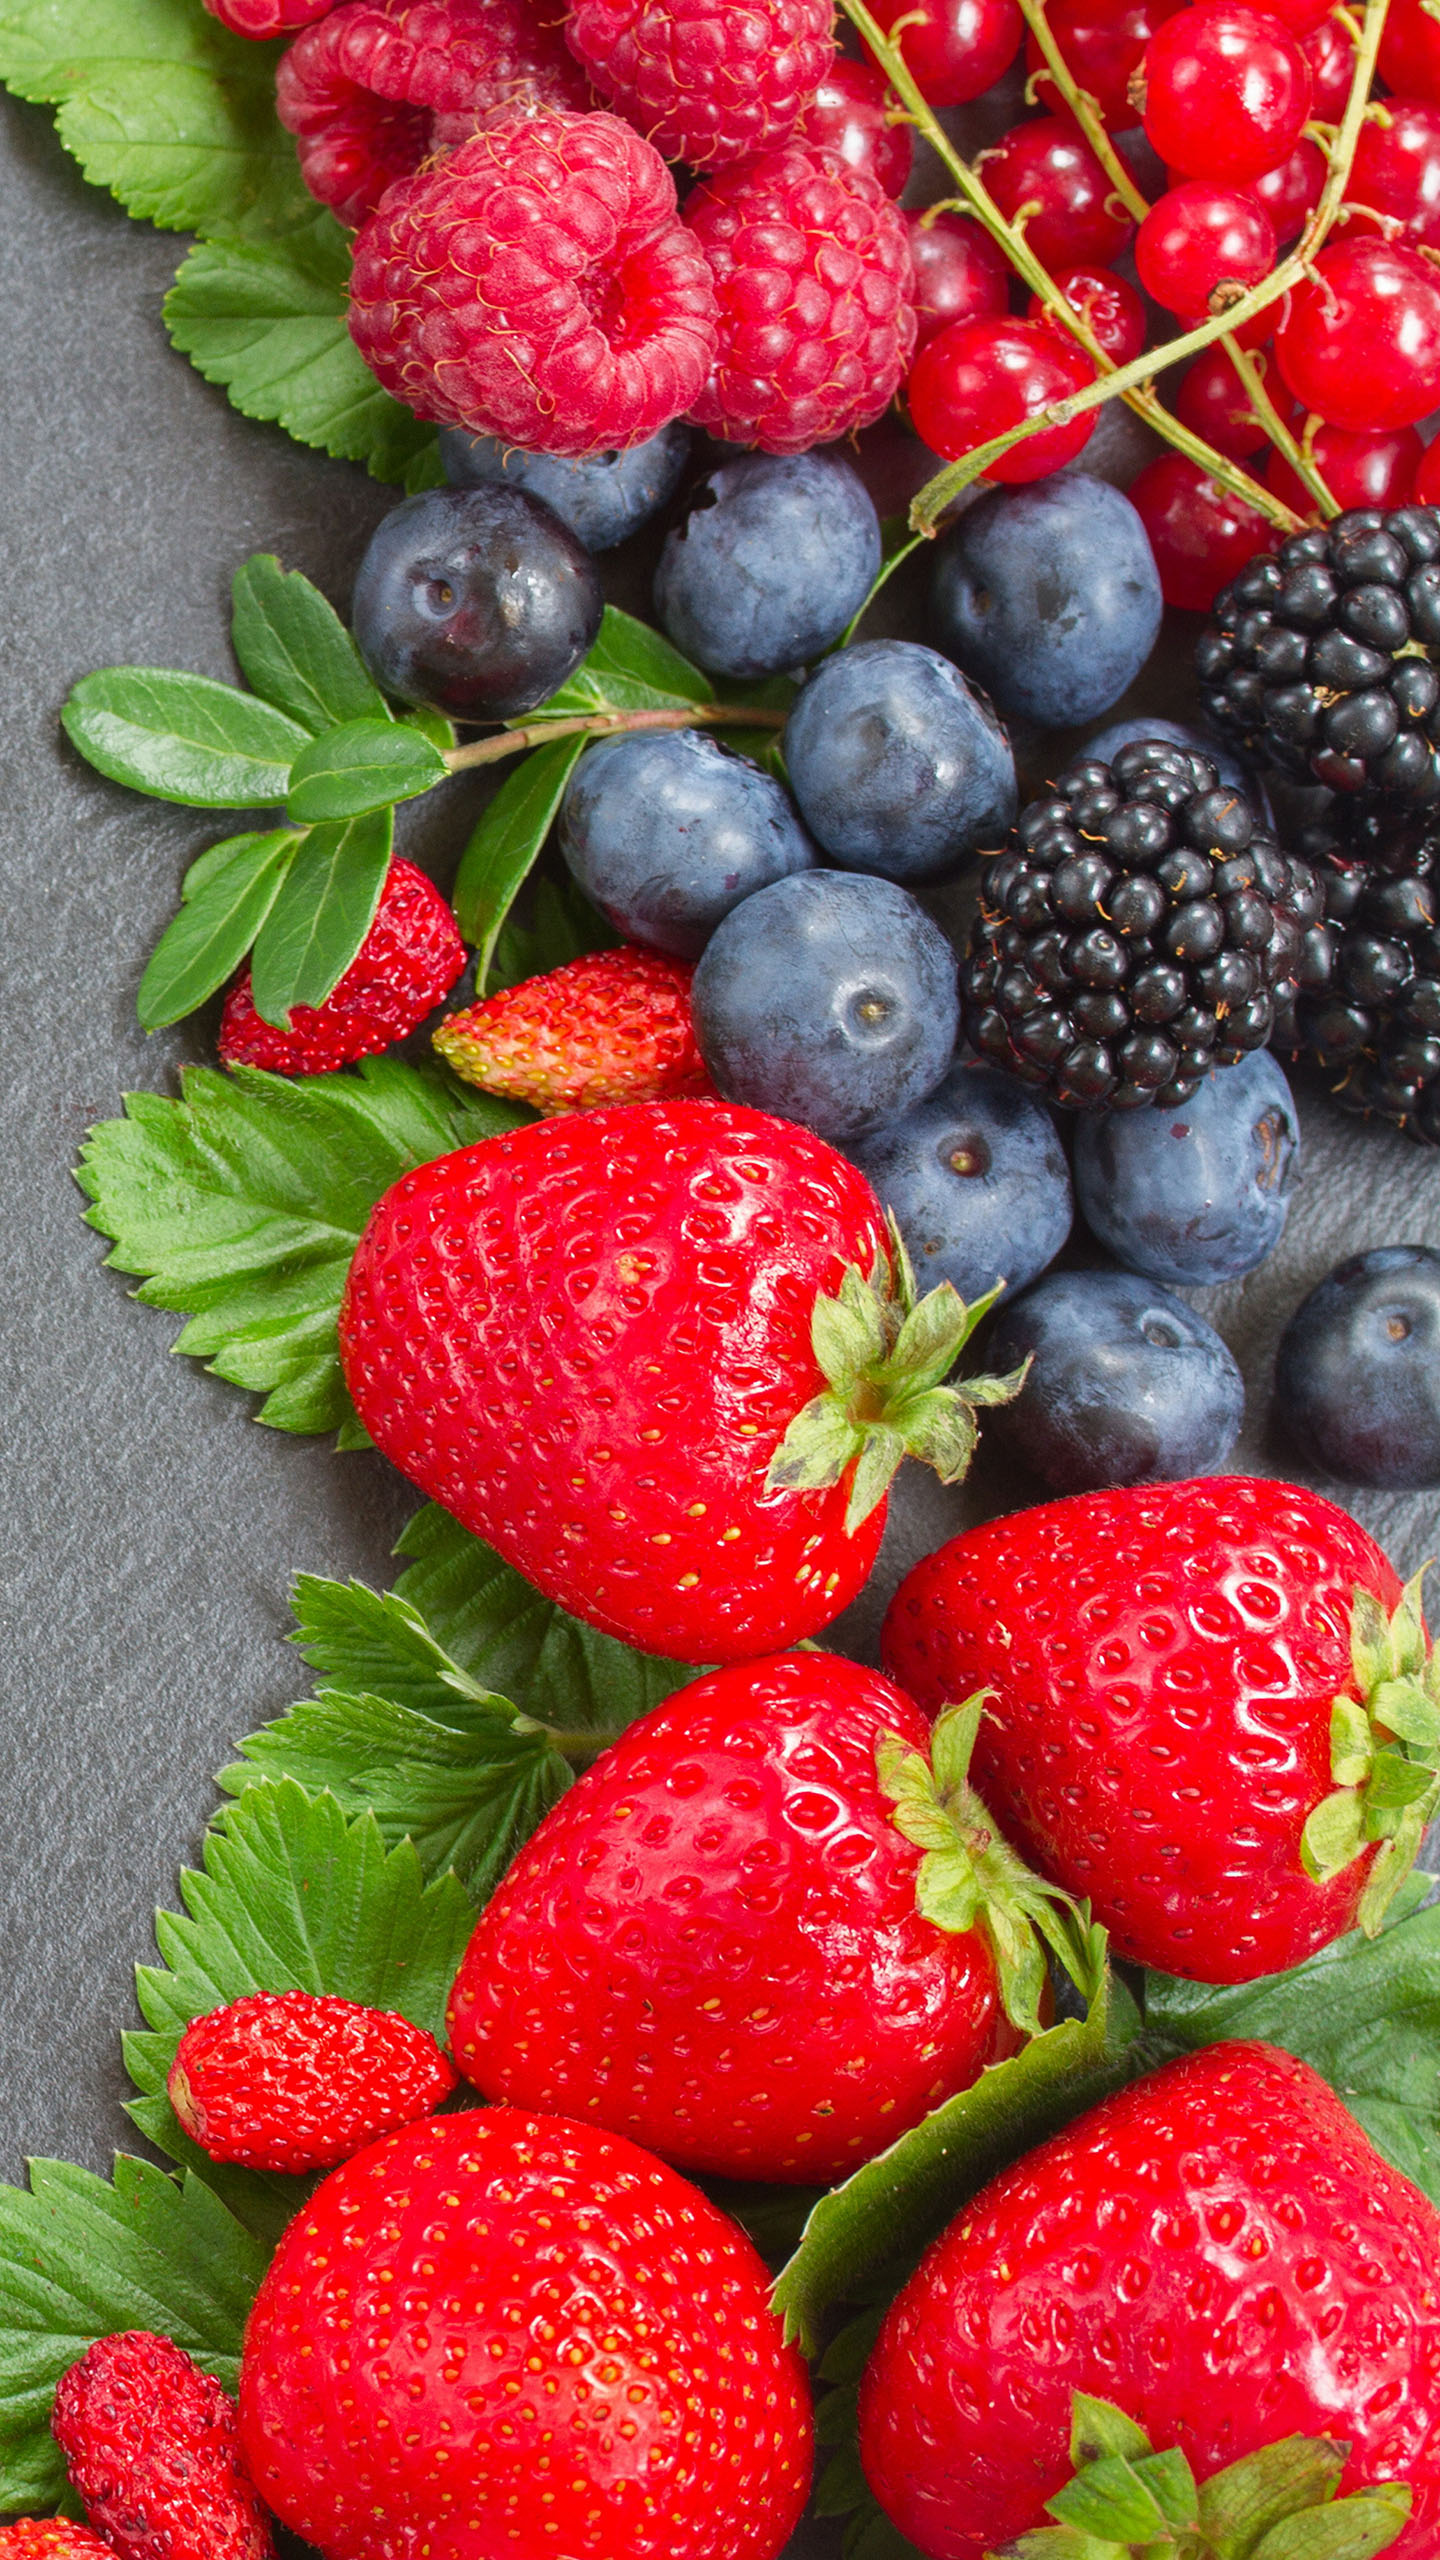 wallpaper s7 edge,natural foods,berry,fruit,strawberry,frutti di bosco